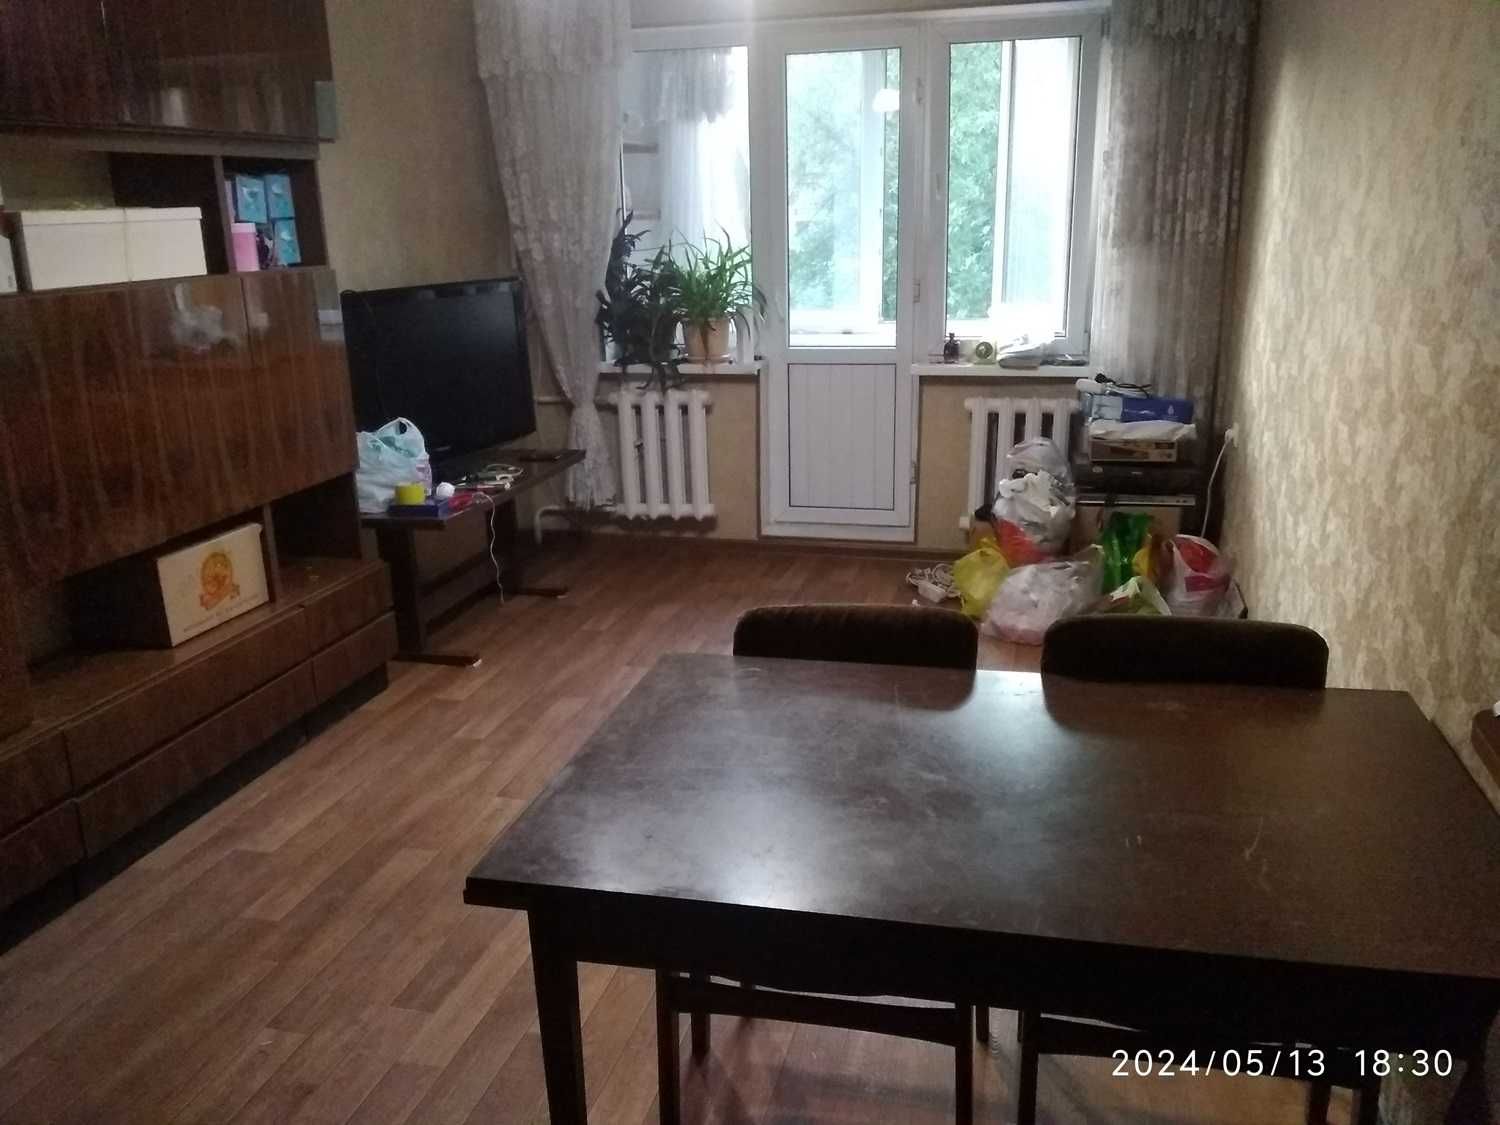 Продам трехкомнатную квартиру в Ауэзовском районе.